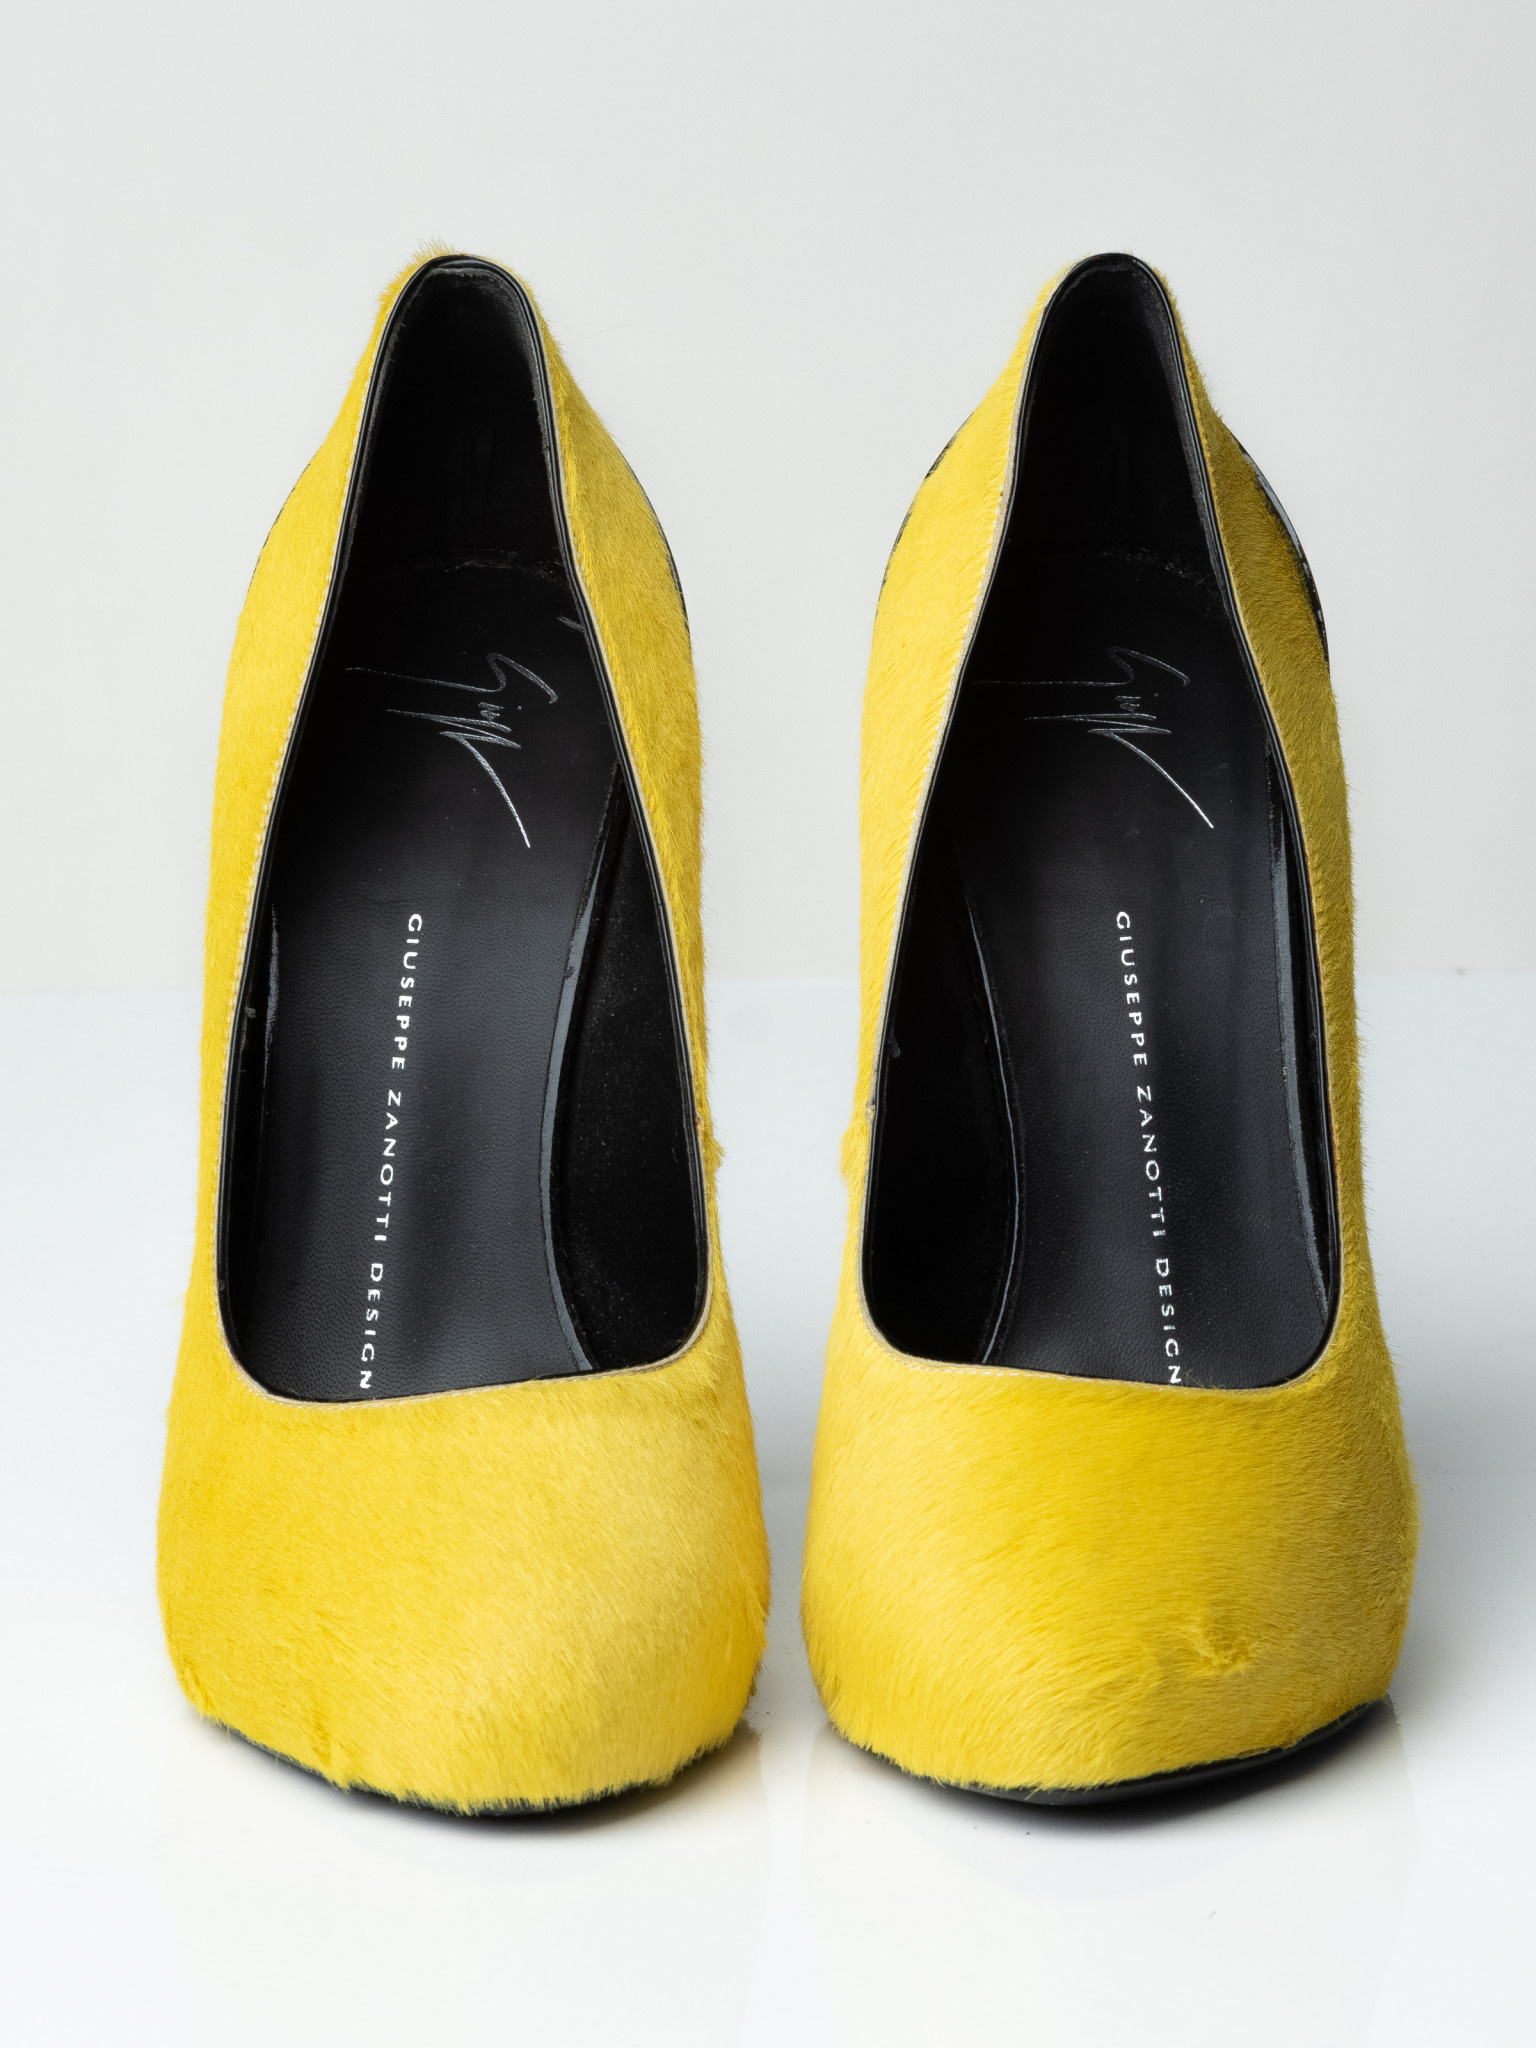 Glitter Heels | Stiletto Heels | XY London